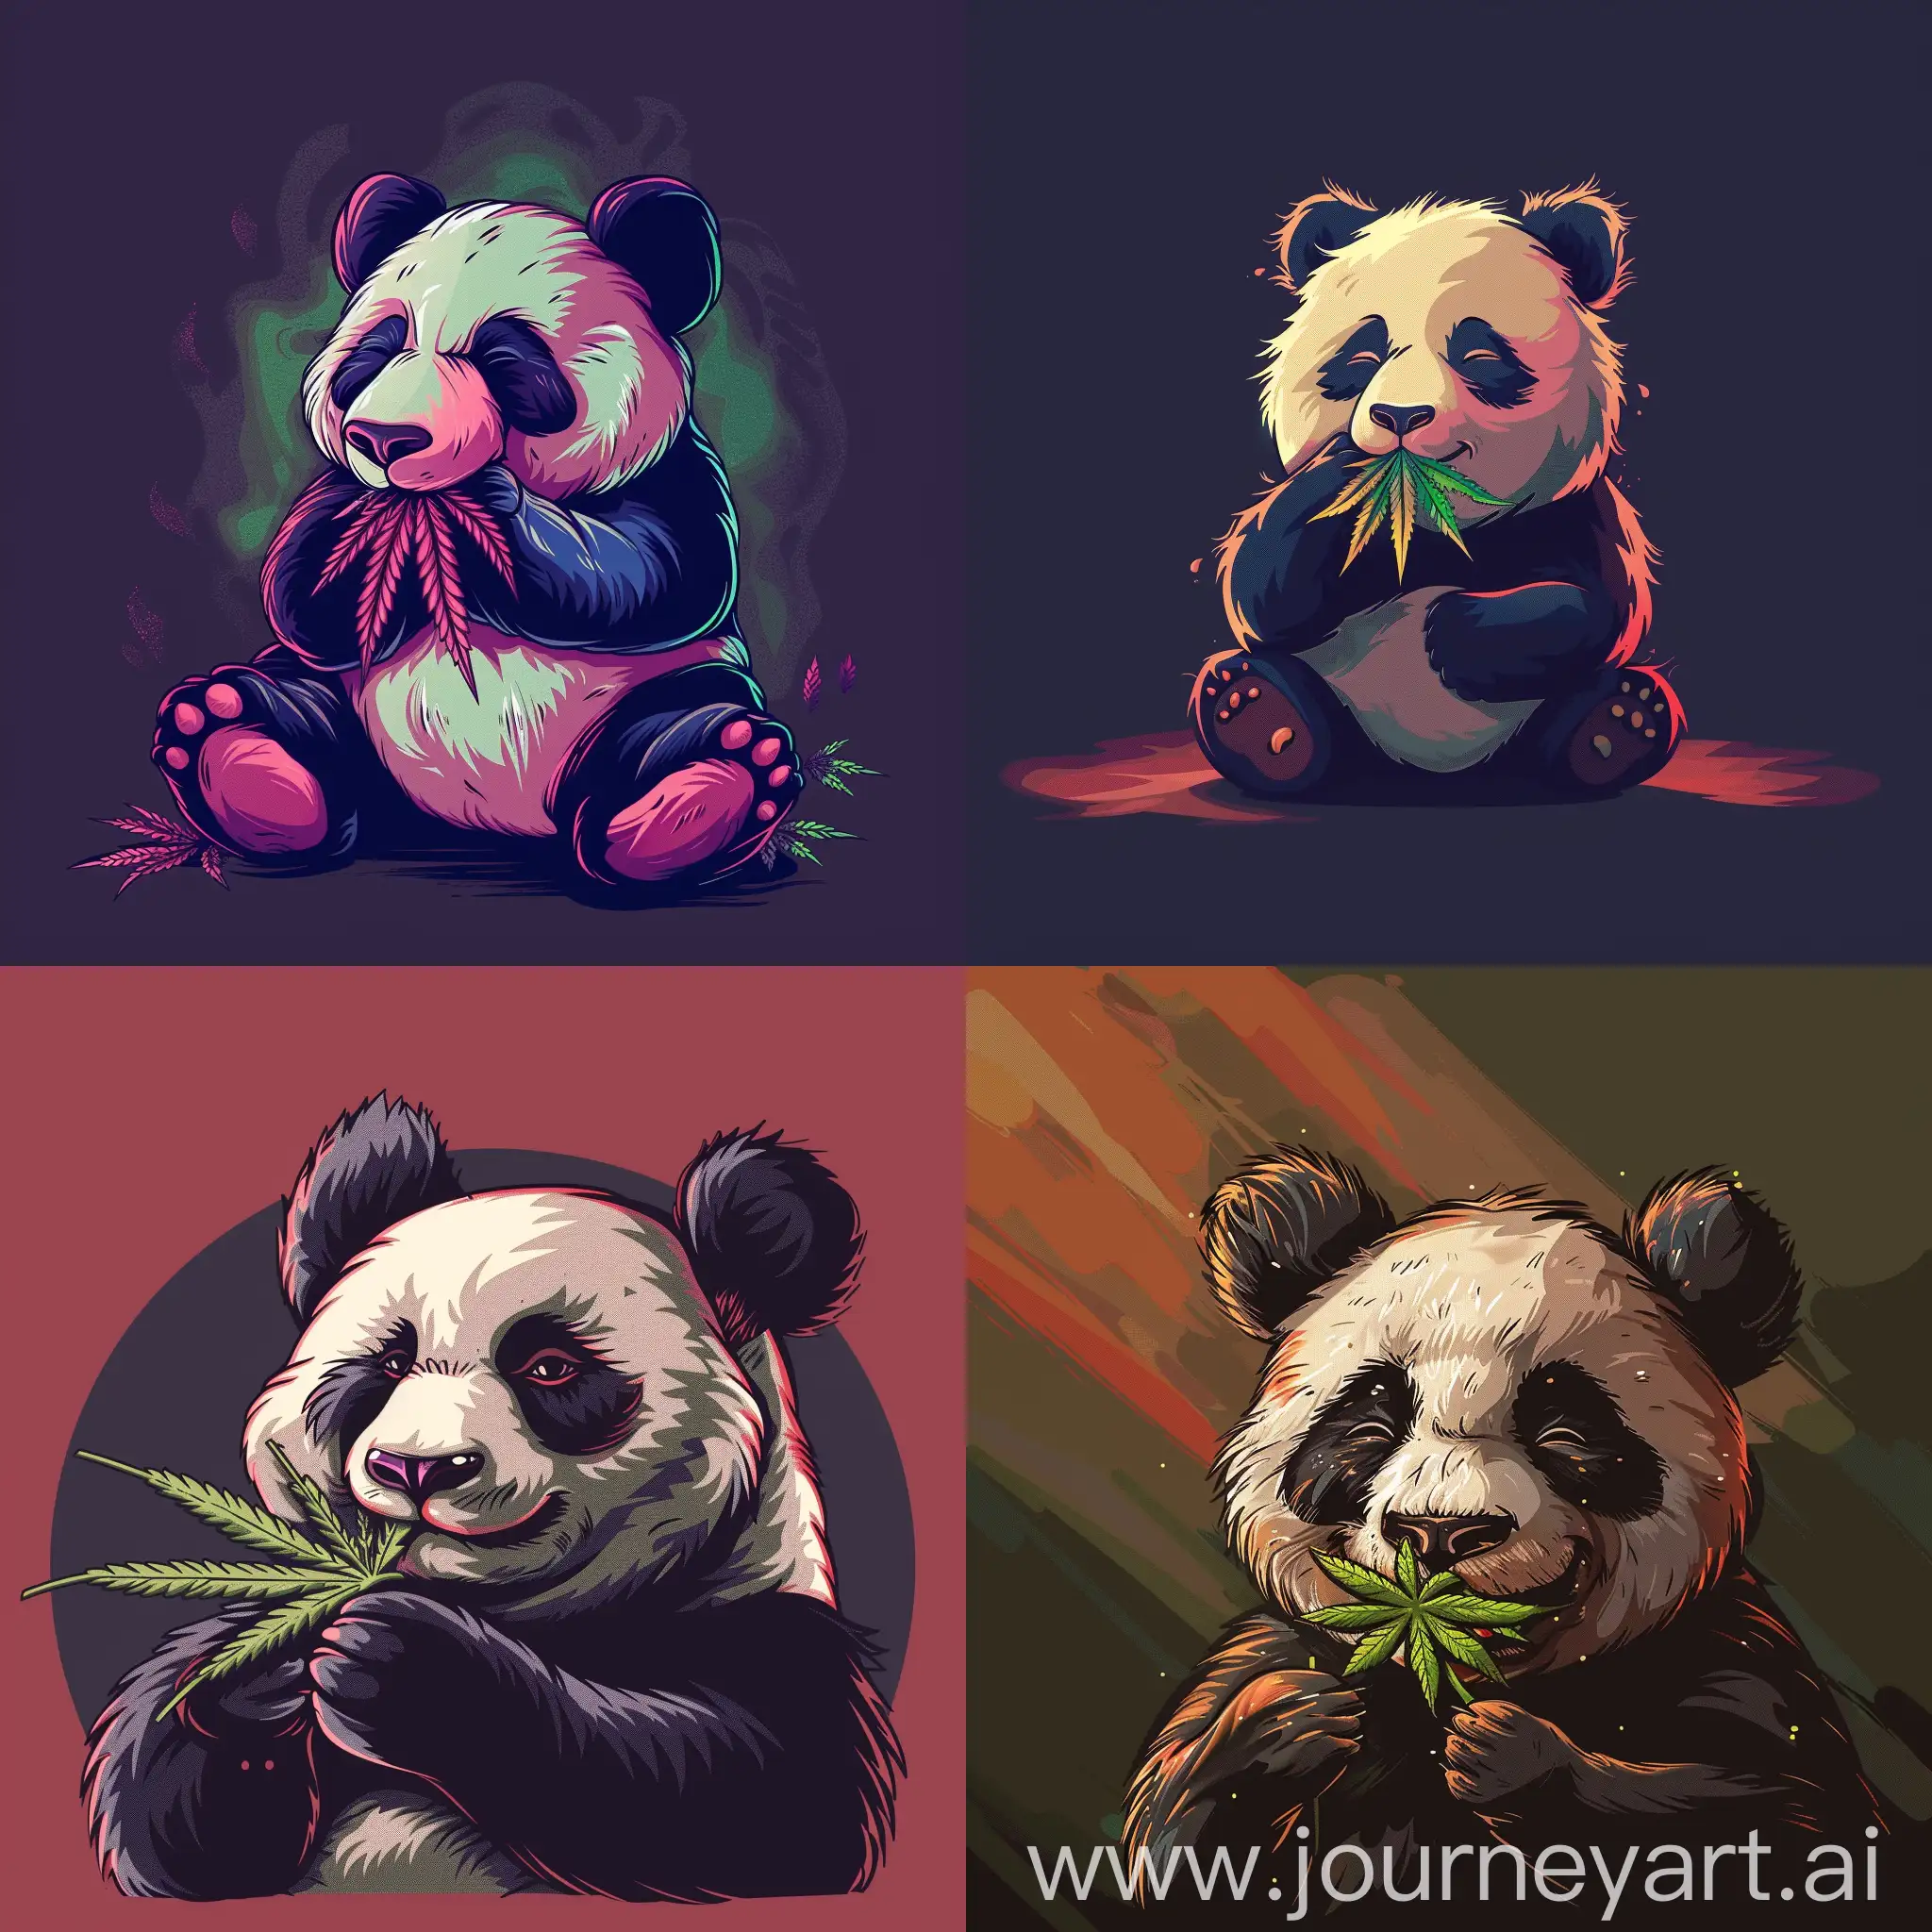 Playful-Cartoon-Panda-Enjoying-a-Cannabis-Leaf-in-Imaginative-Minimalist-Style